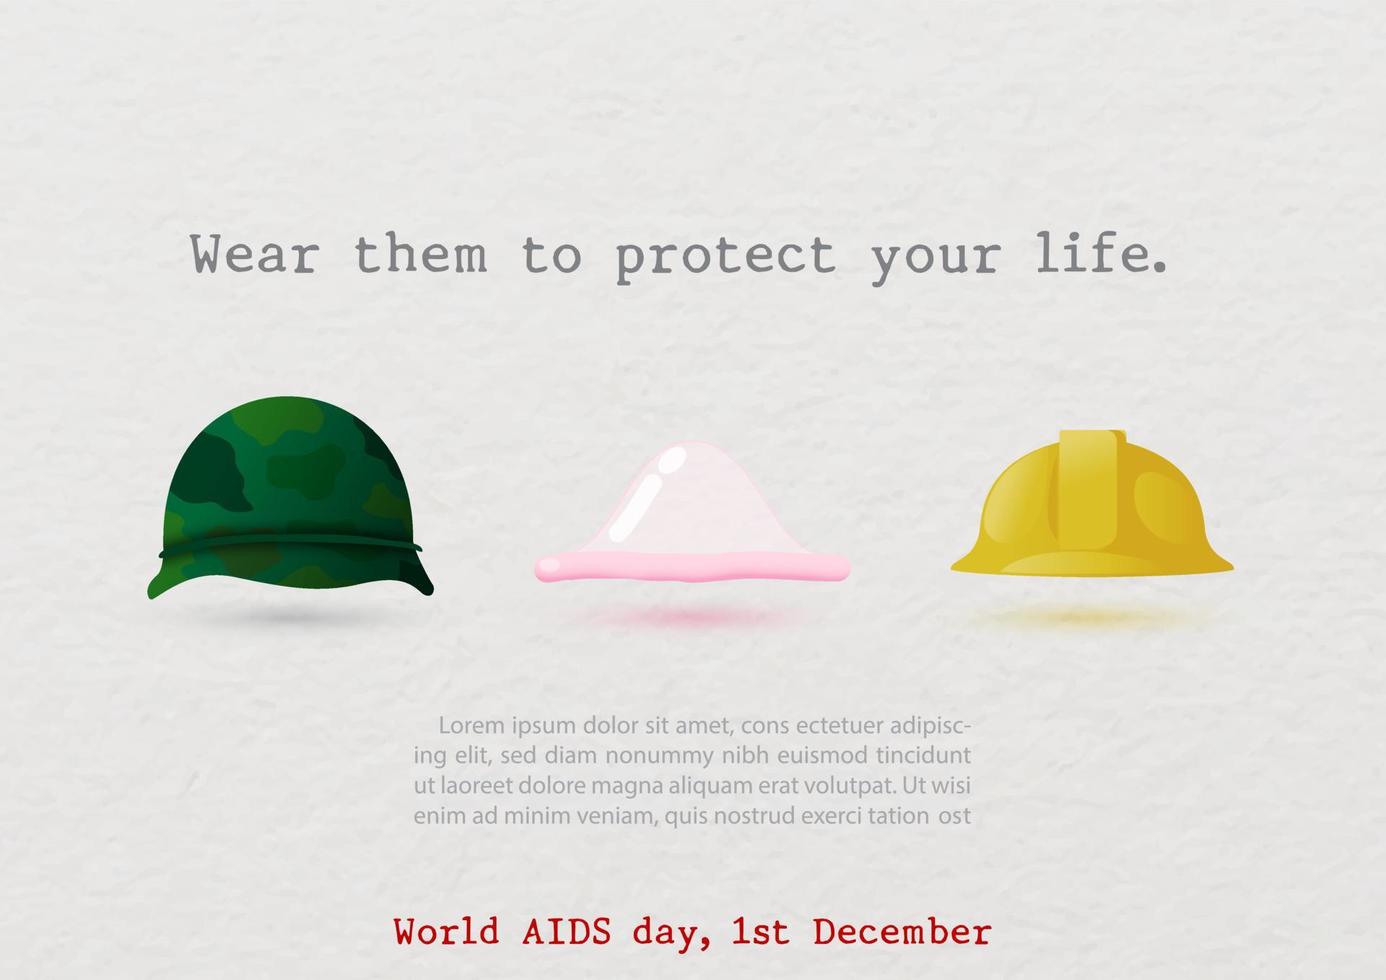 affisch kampanj i liv skydd begrepp med slogan och lydelse av värld AIDS dag, exempel texter på vit papper mönster bakgrund. värld AIDS dag affisch kampanj i vektor design